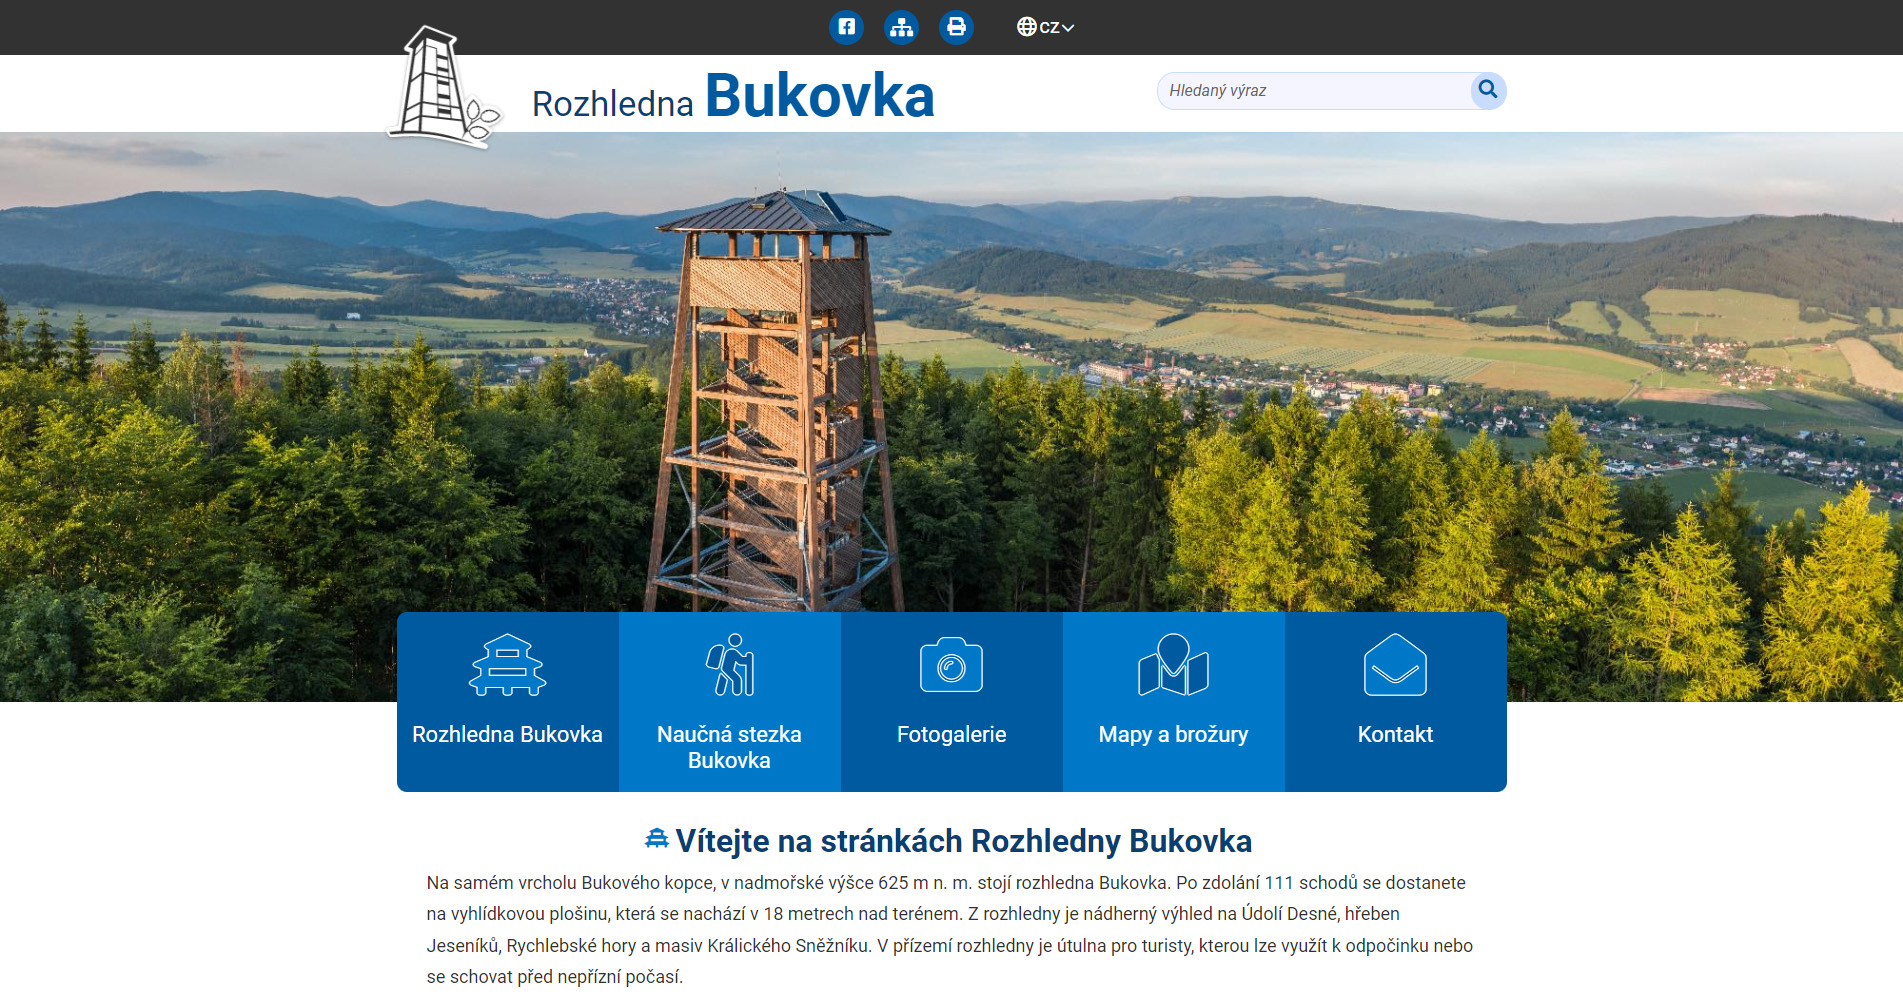 Rozhledna Bukovka